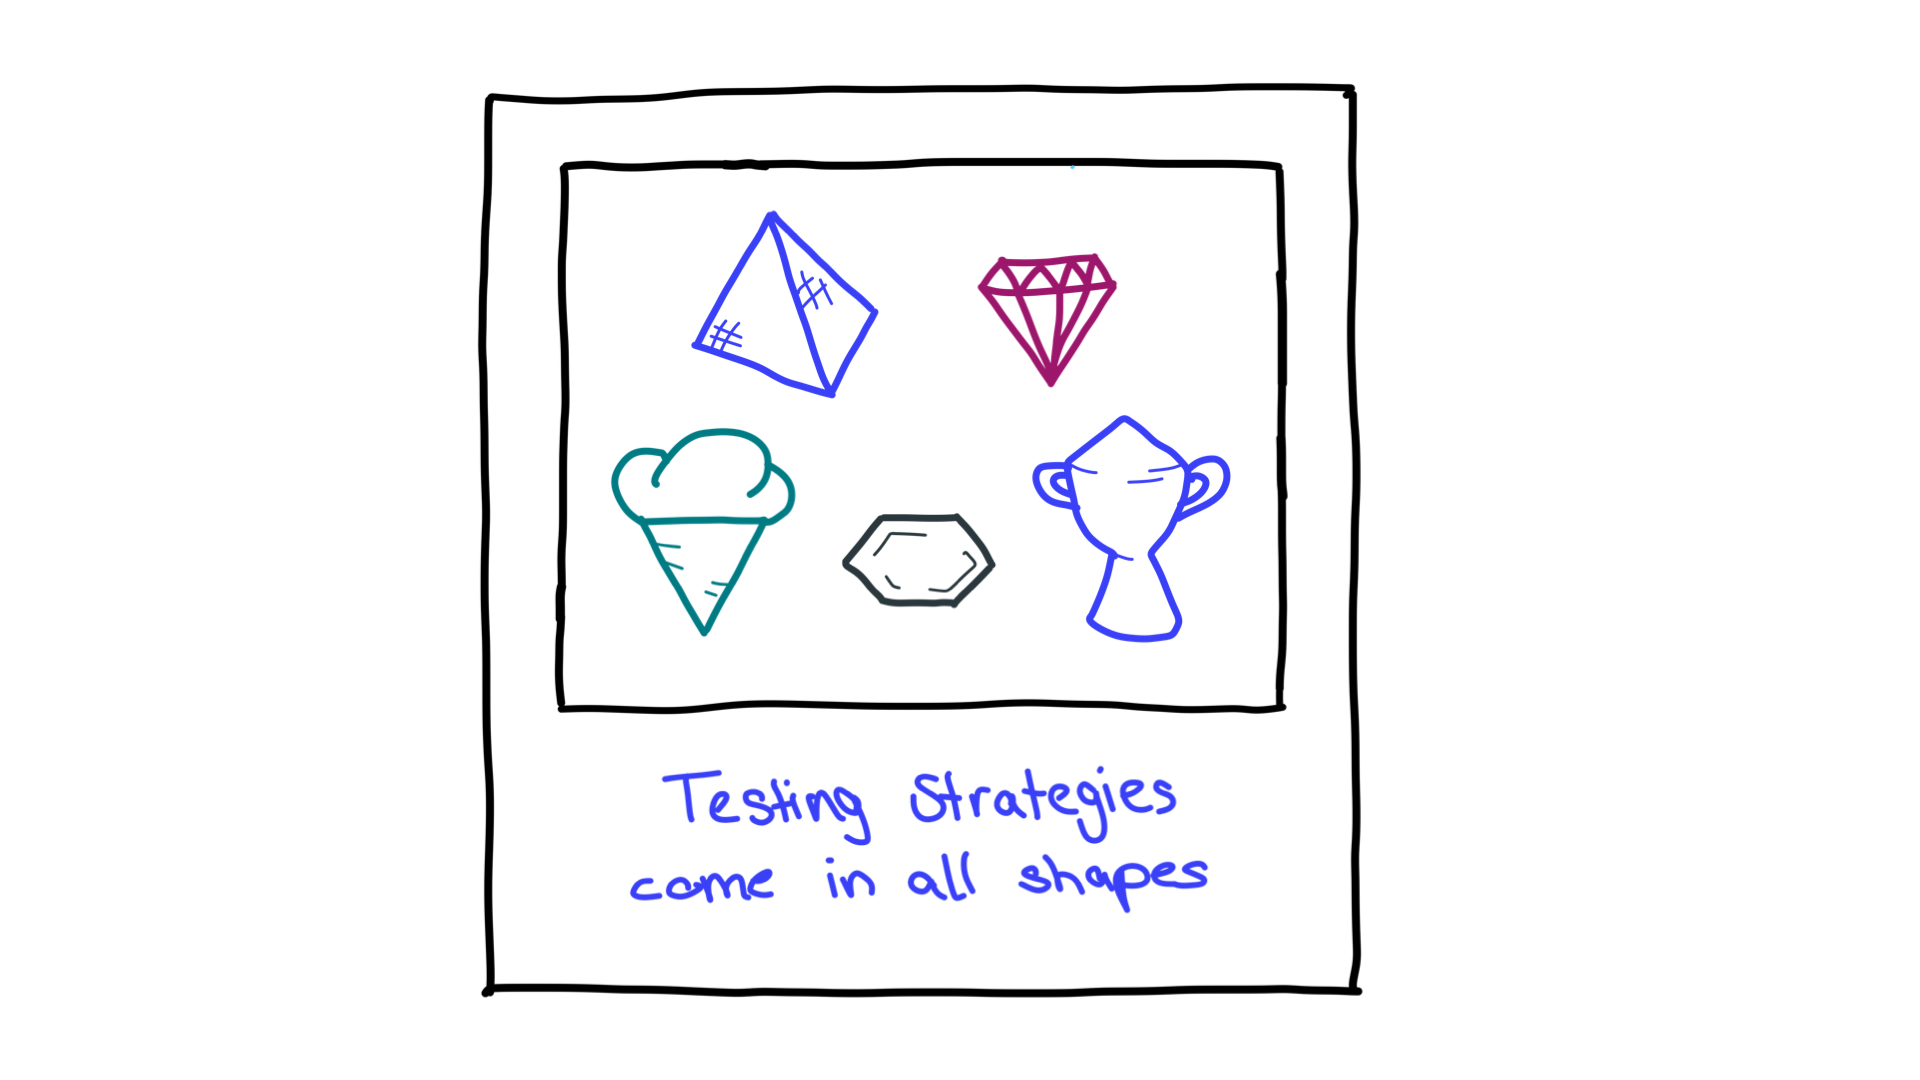 Wiele kształtów, takich jak piramida, diamenty, rożek lodowy, plaster miodu i trofeum, reprezentujące strategie testowe.